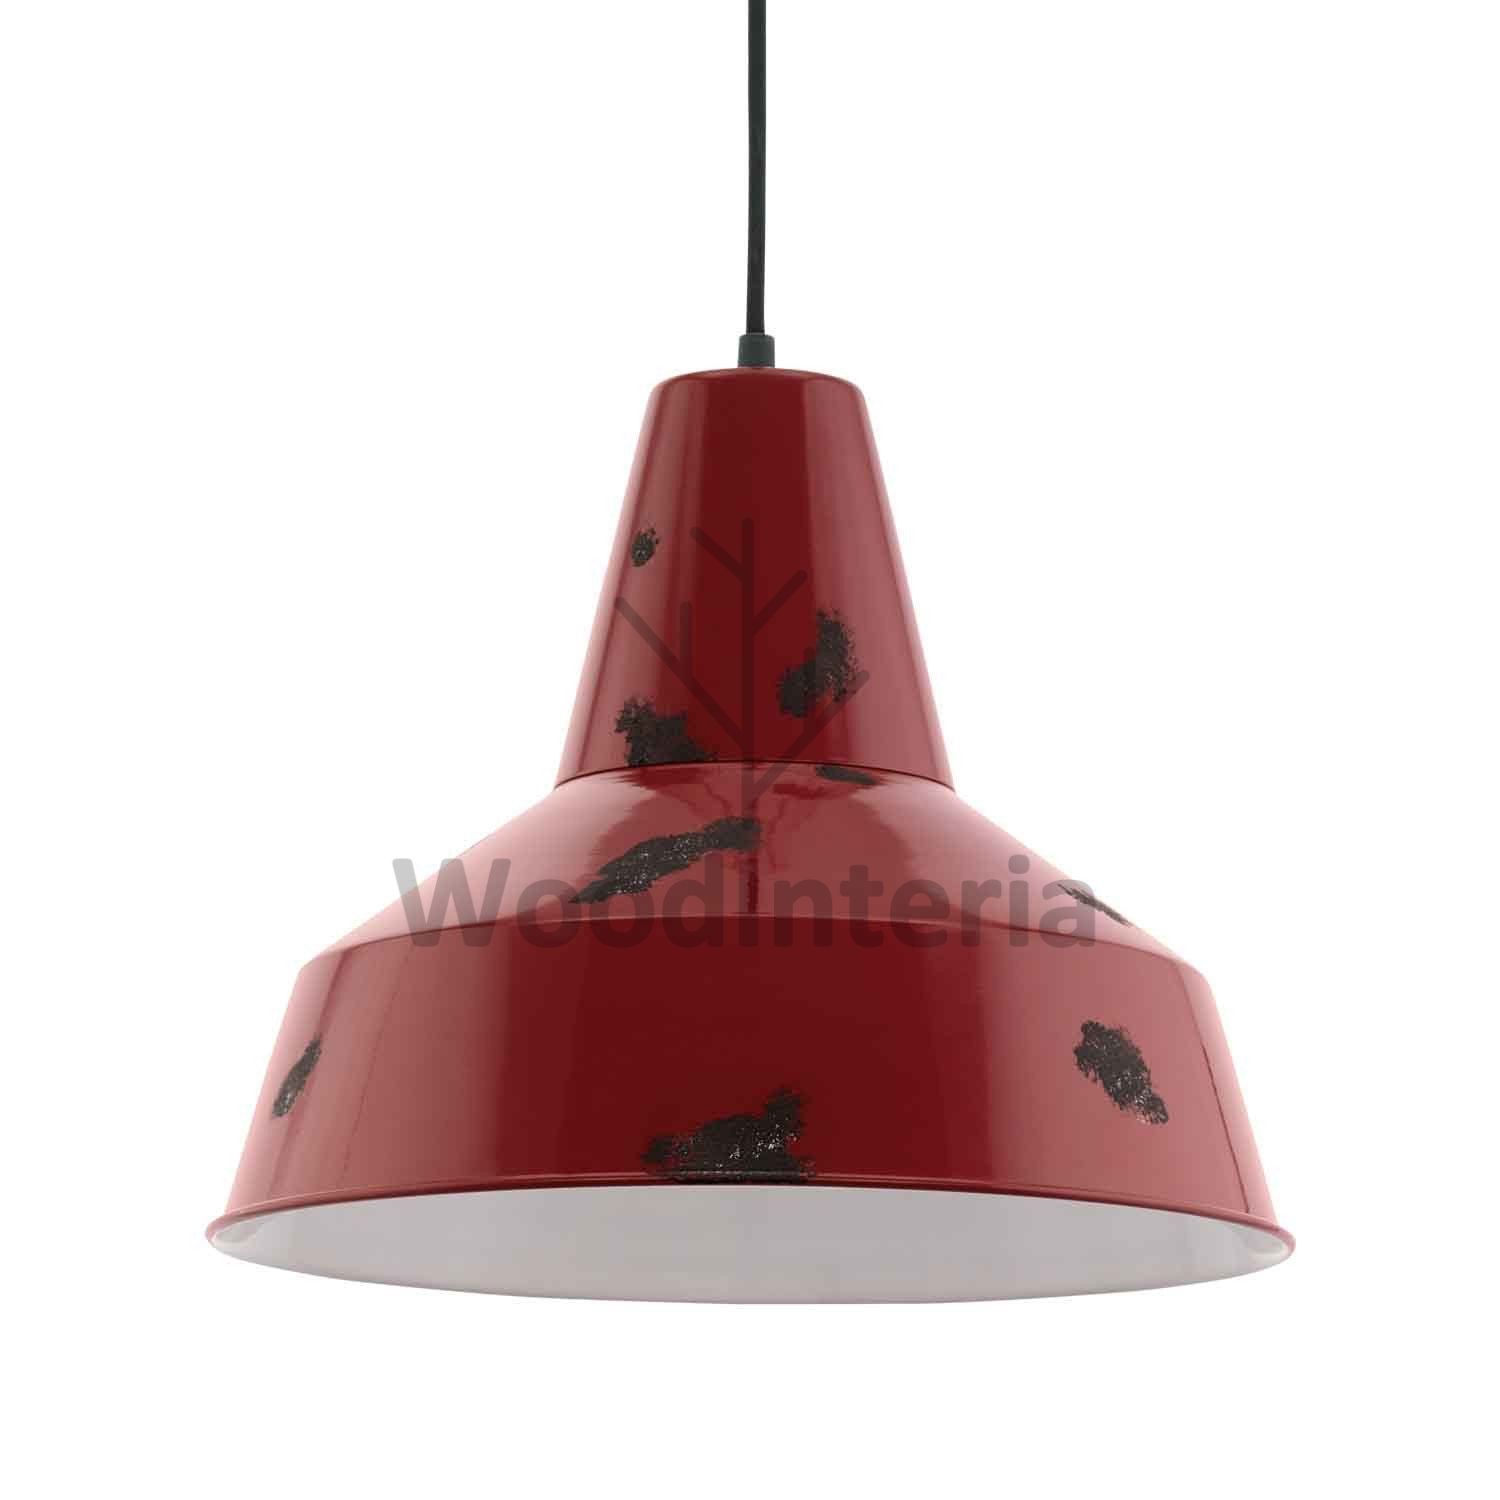 фото подвесной светильник inheritance red в скандинавском интерьере лофт эко | WoodInteria